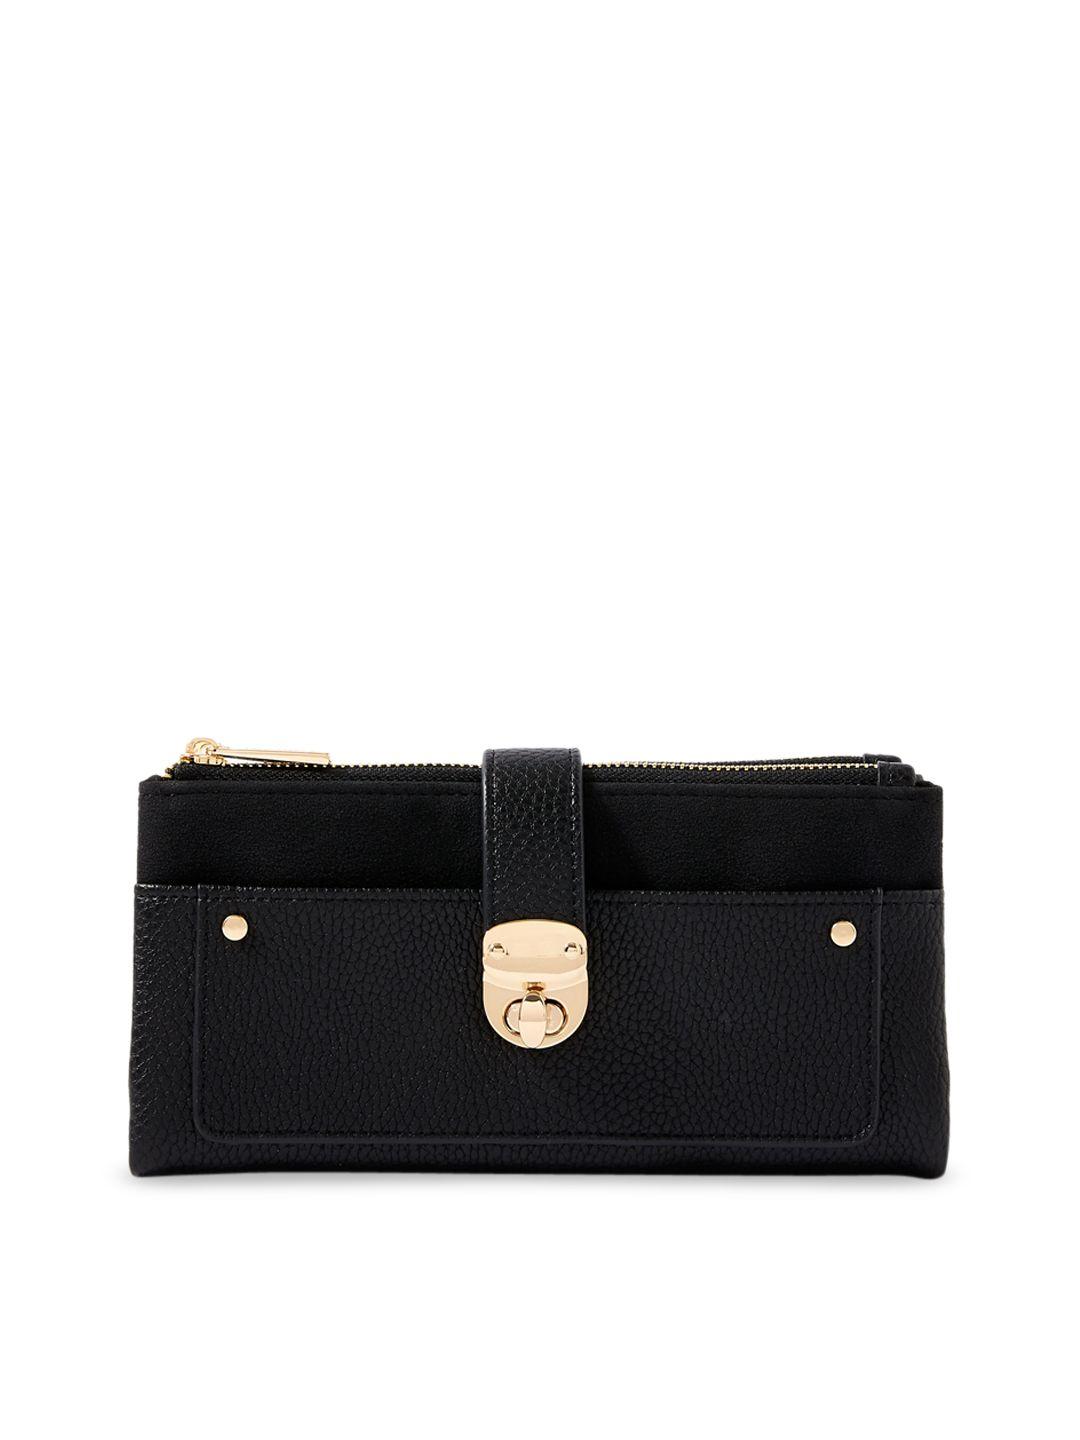 accessorize women black faux leather freya wallet